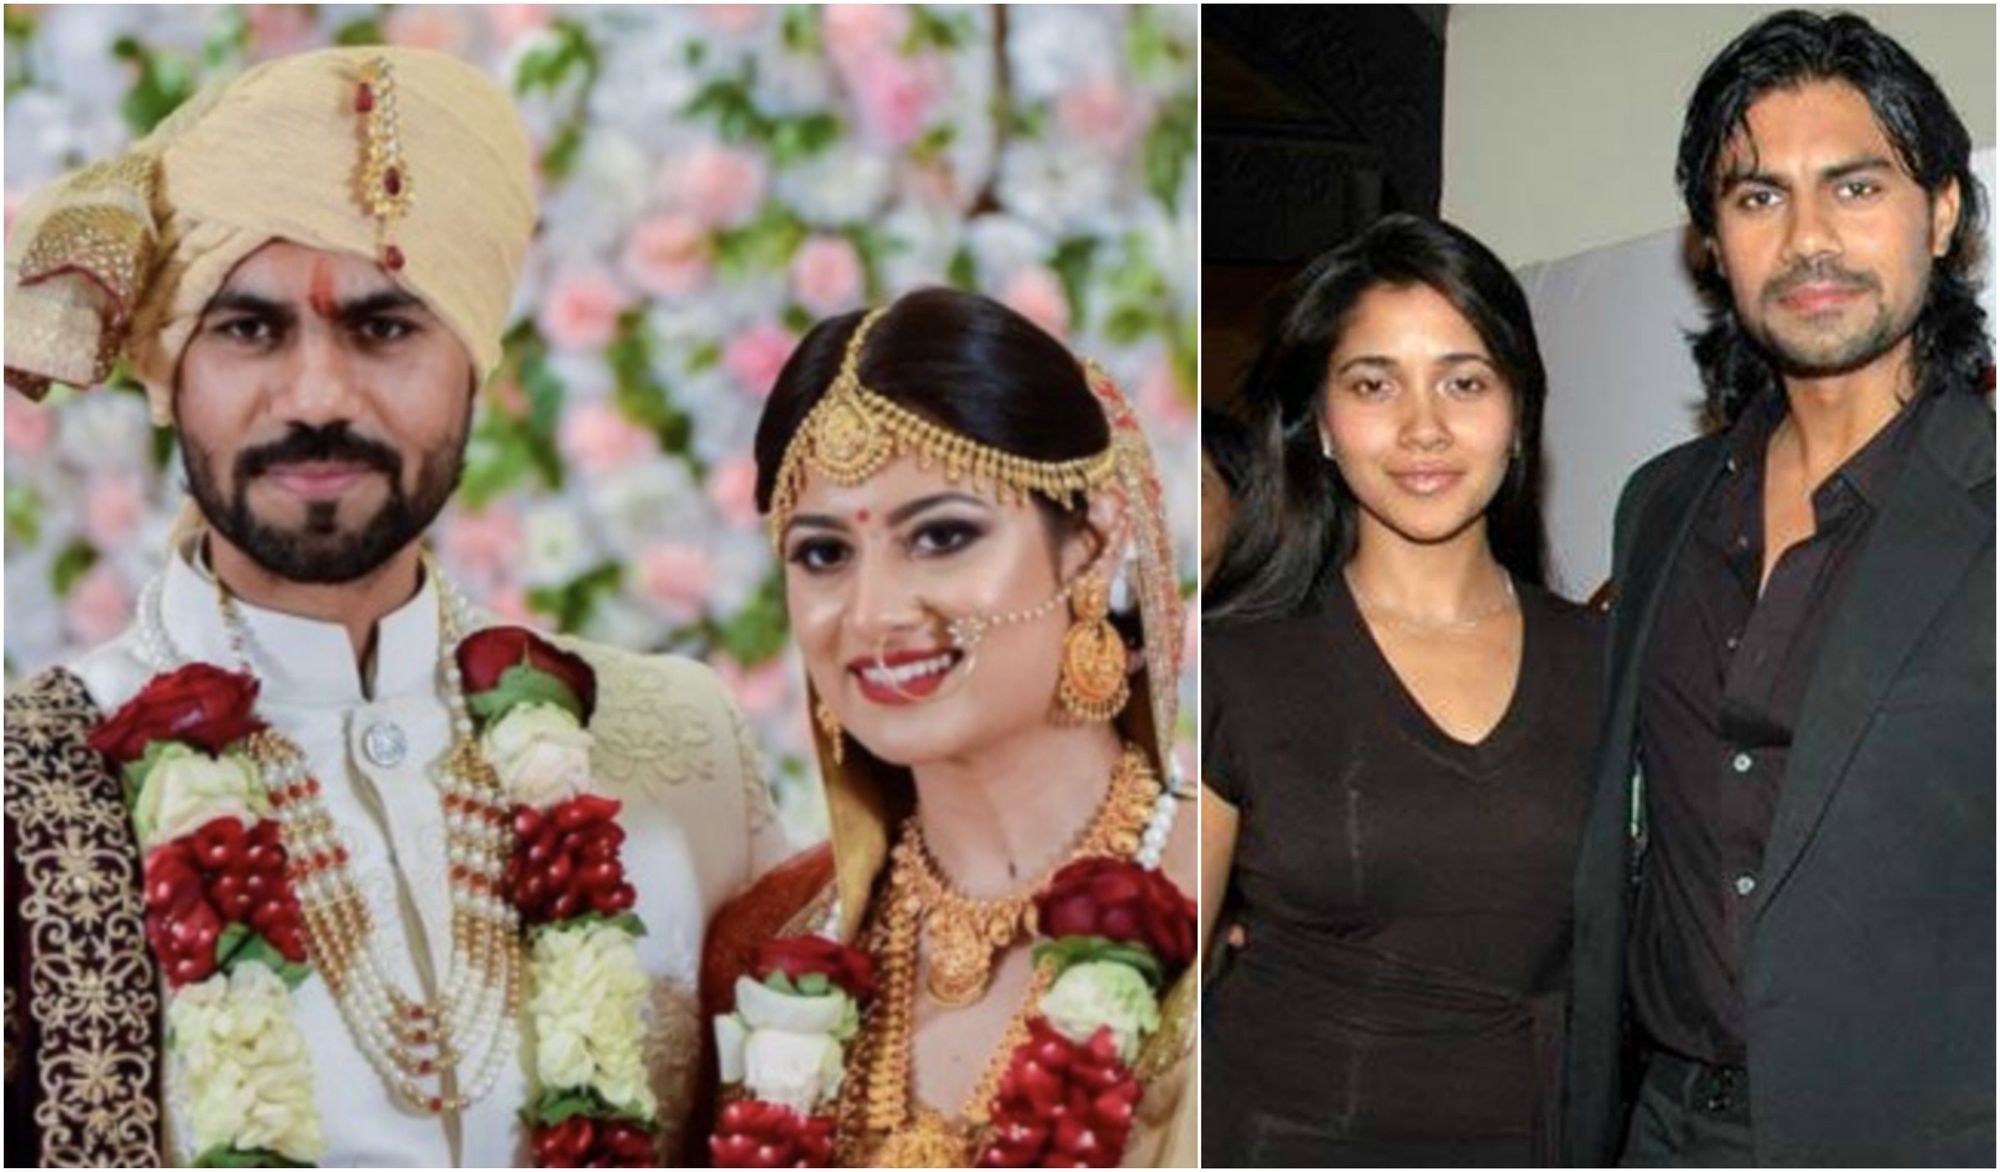 Narayani Shastri Opens Up About Her Ex Gaurav Chopra’s Secret Wedding